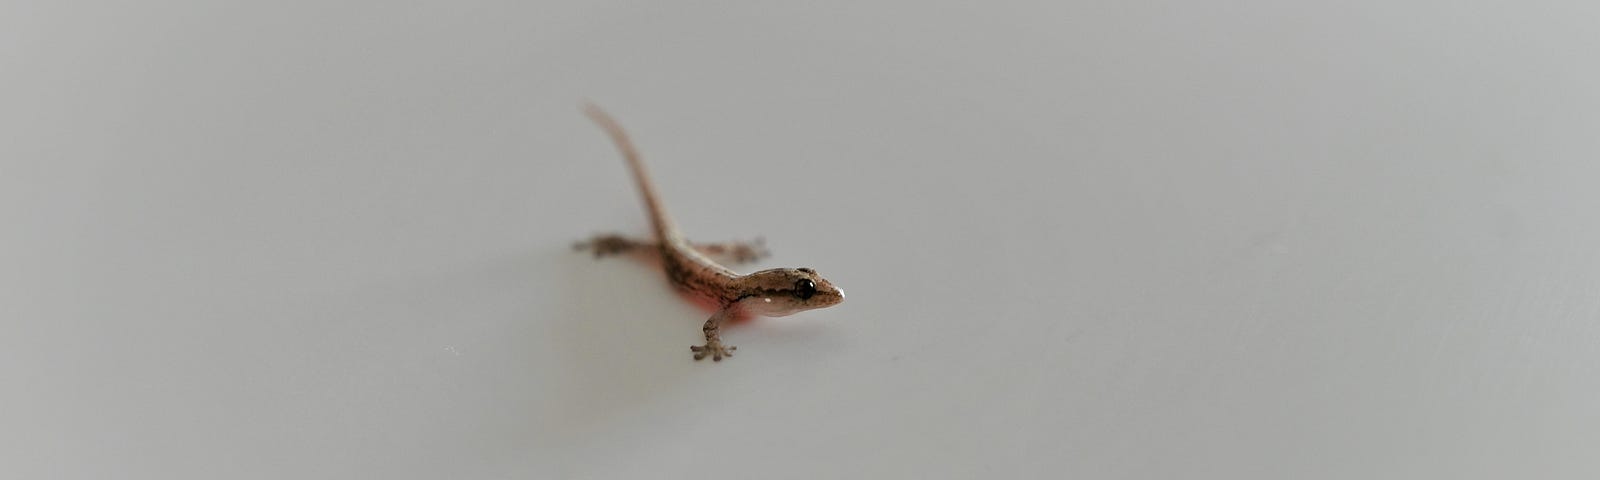 An adorable lizard.